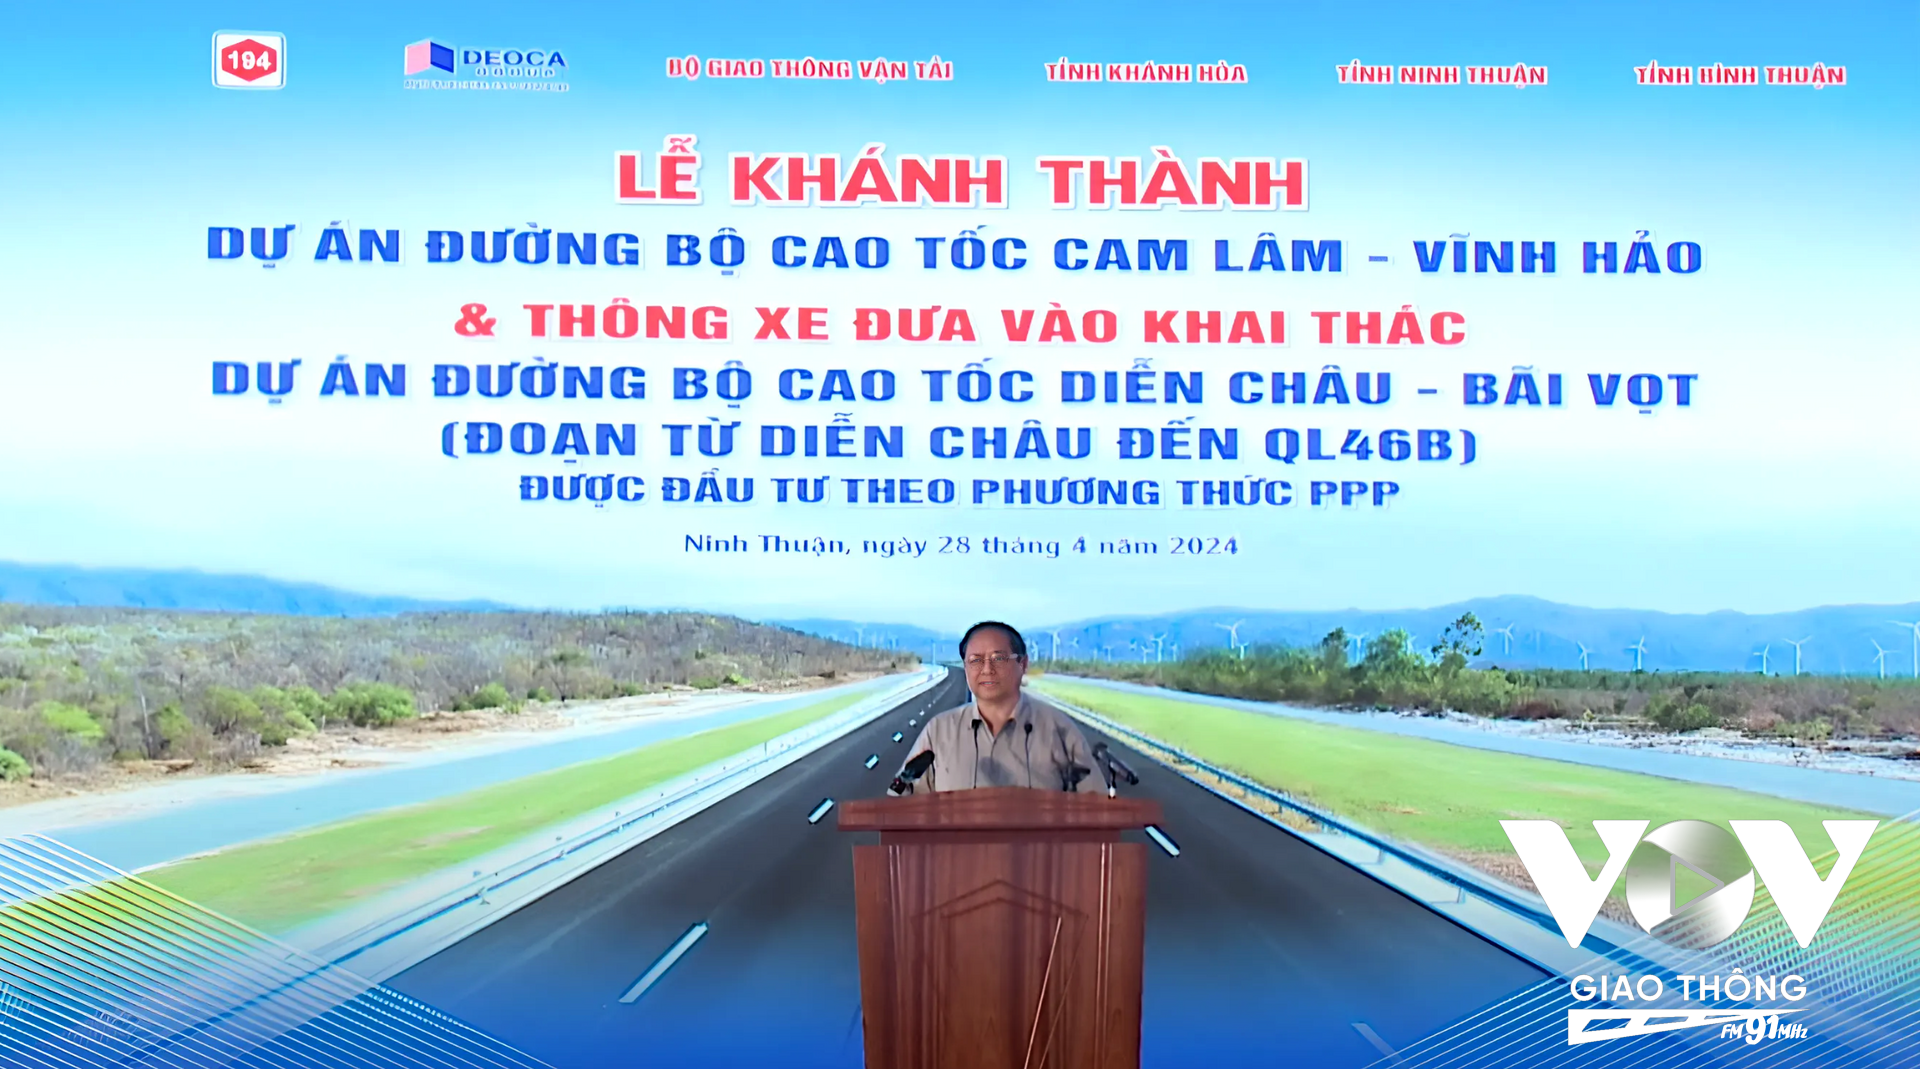 Tham dự Lễ khánh thành Dự án đường bộ cao tốc Cam Lâm - Vĩnh Hảo có Thủ tướng Chính phủ Phạm Minh Chính